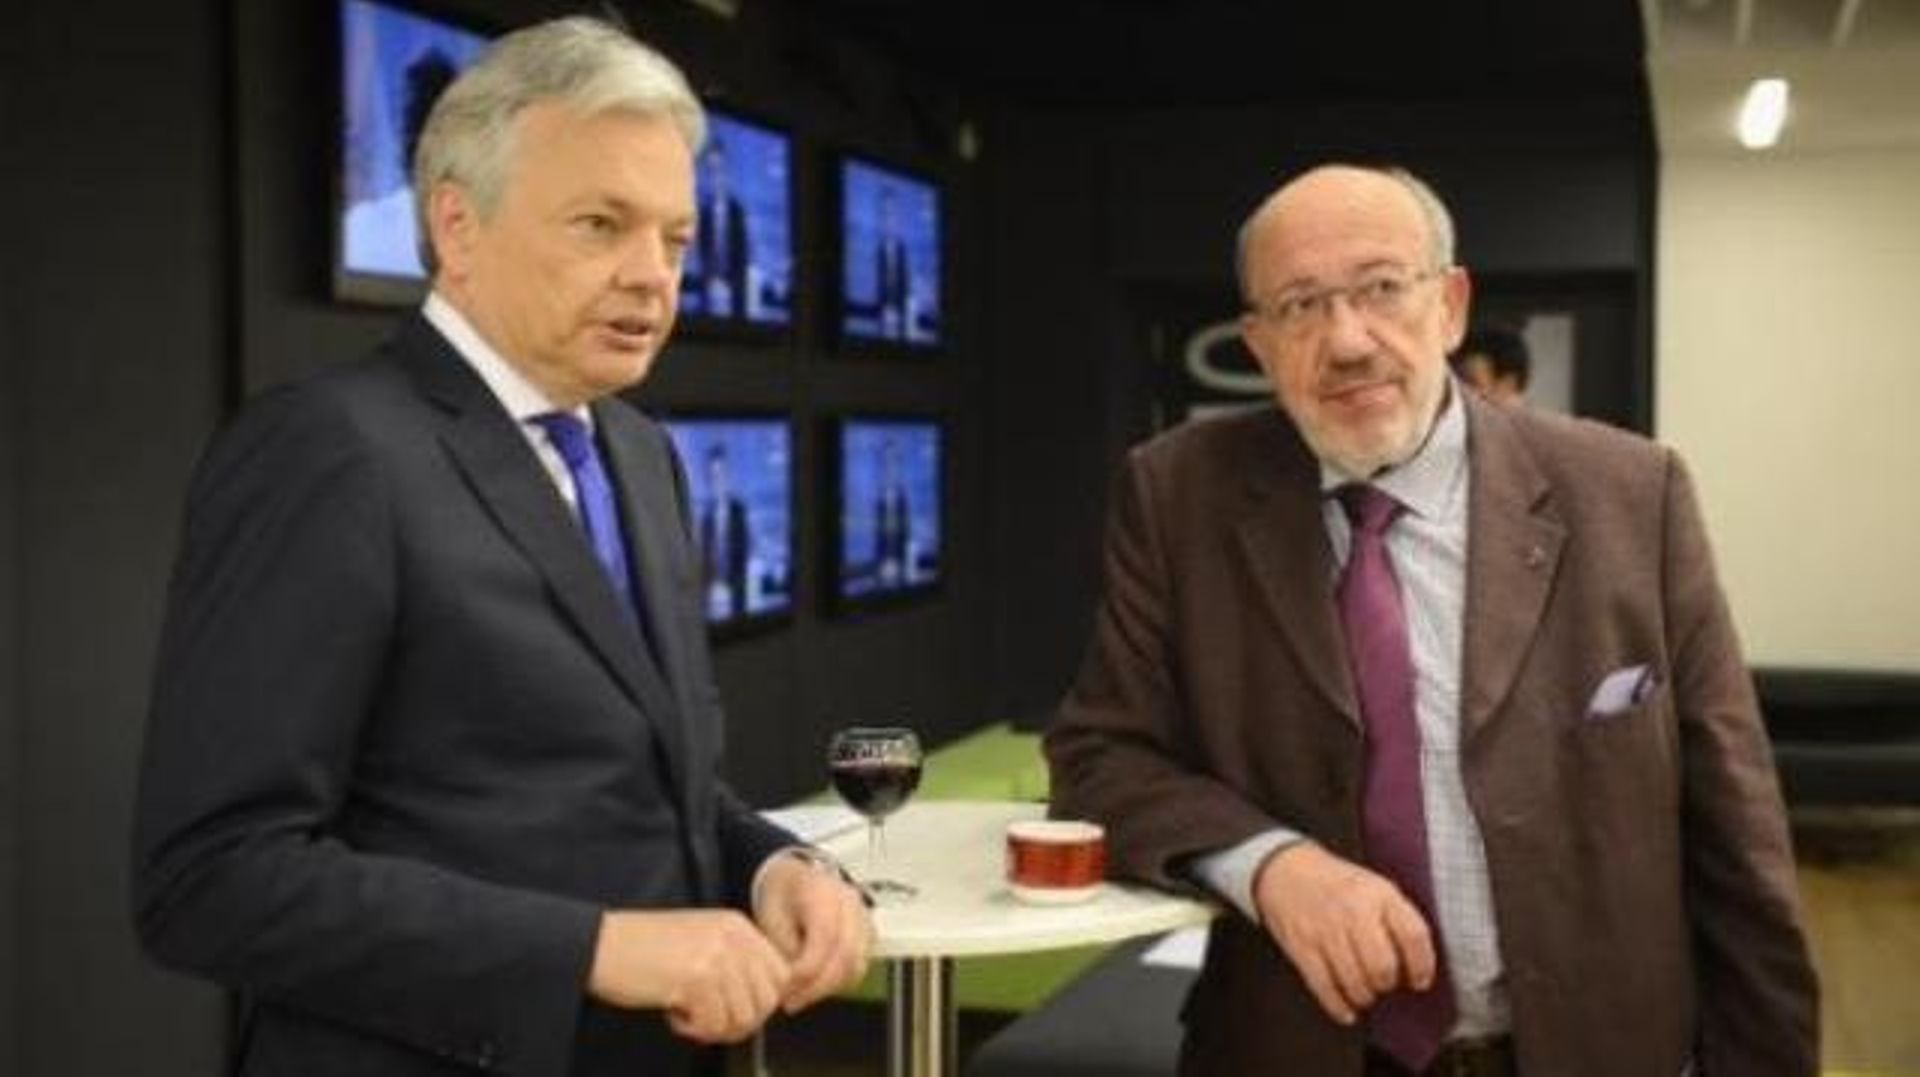 Le MR veut un Premier ministre ou un commissaire européen, dit L. Michel